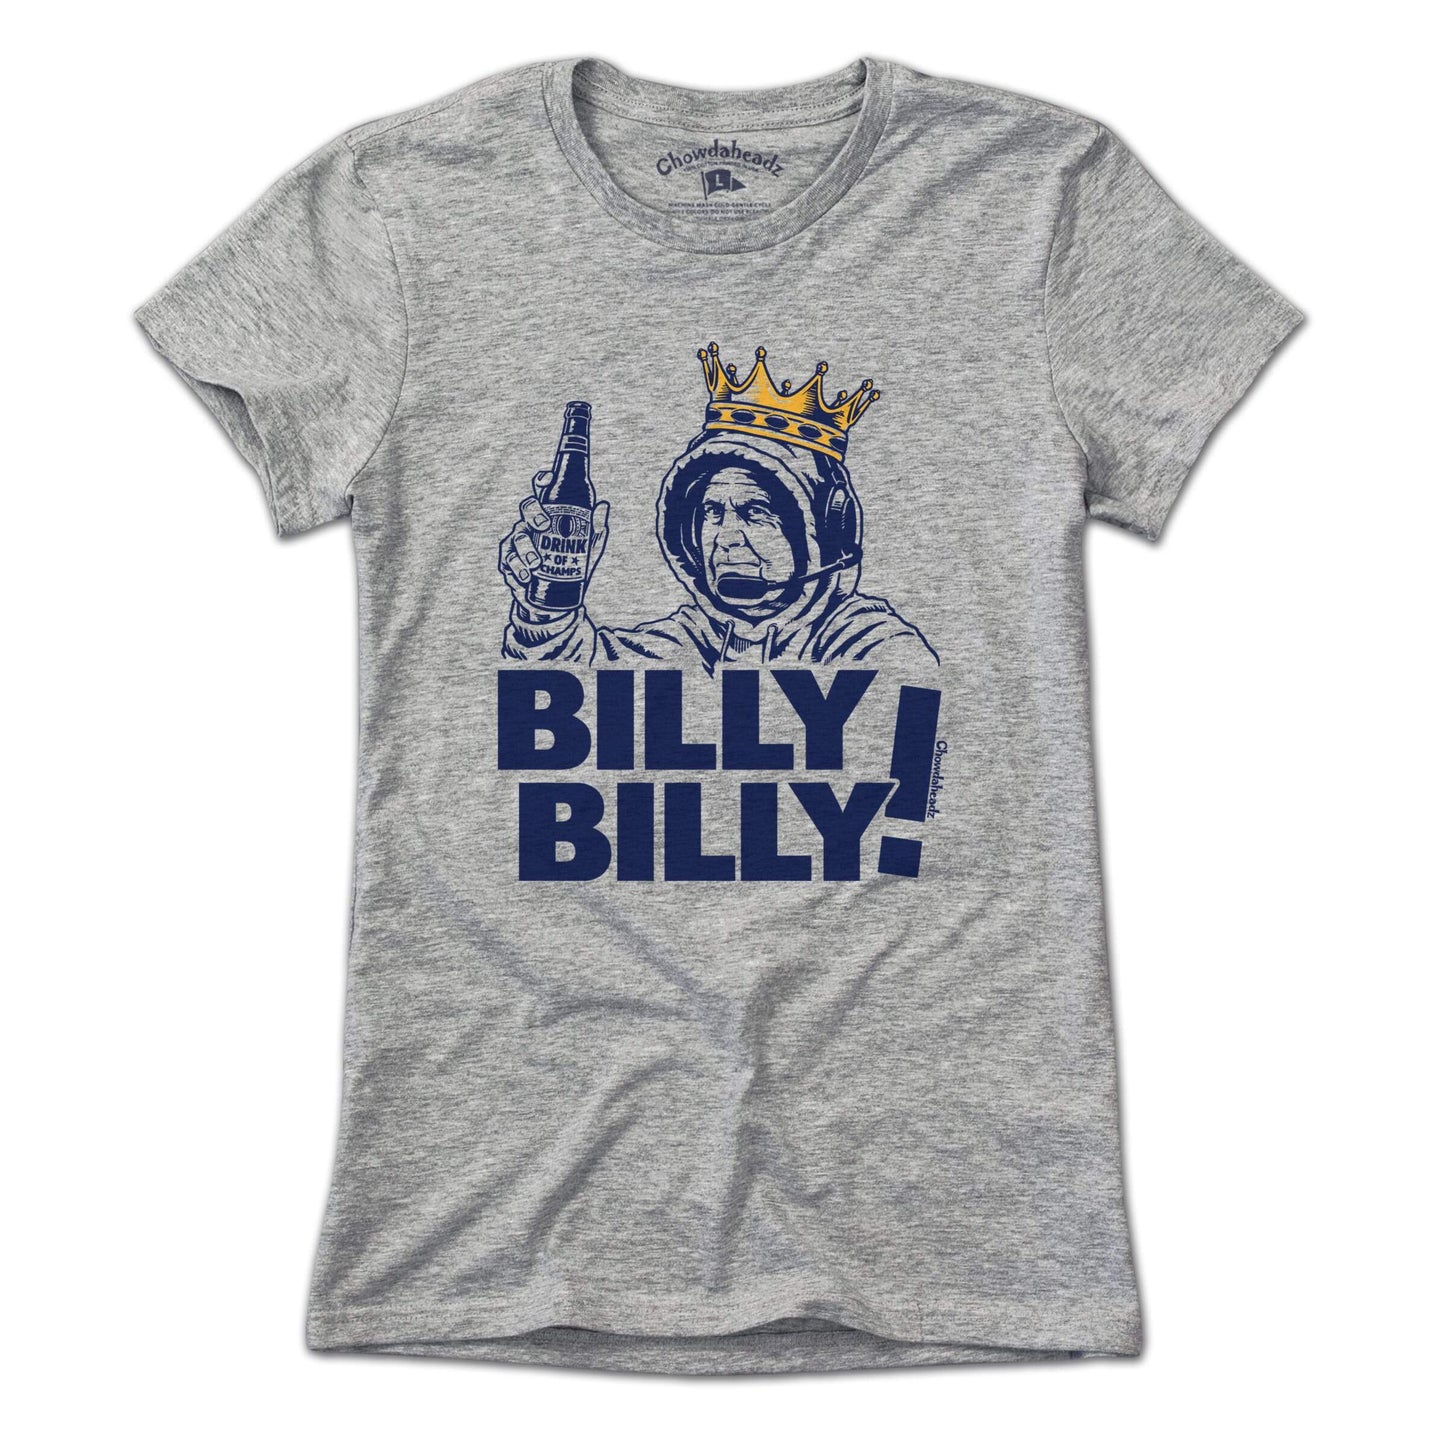 Billy Billy! T-Shirt - Chowdaheadz